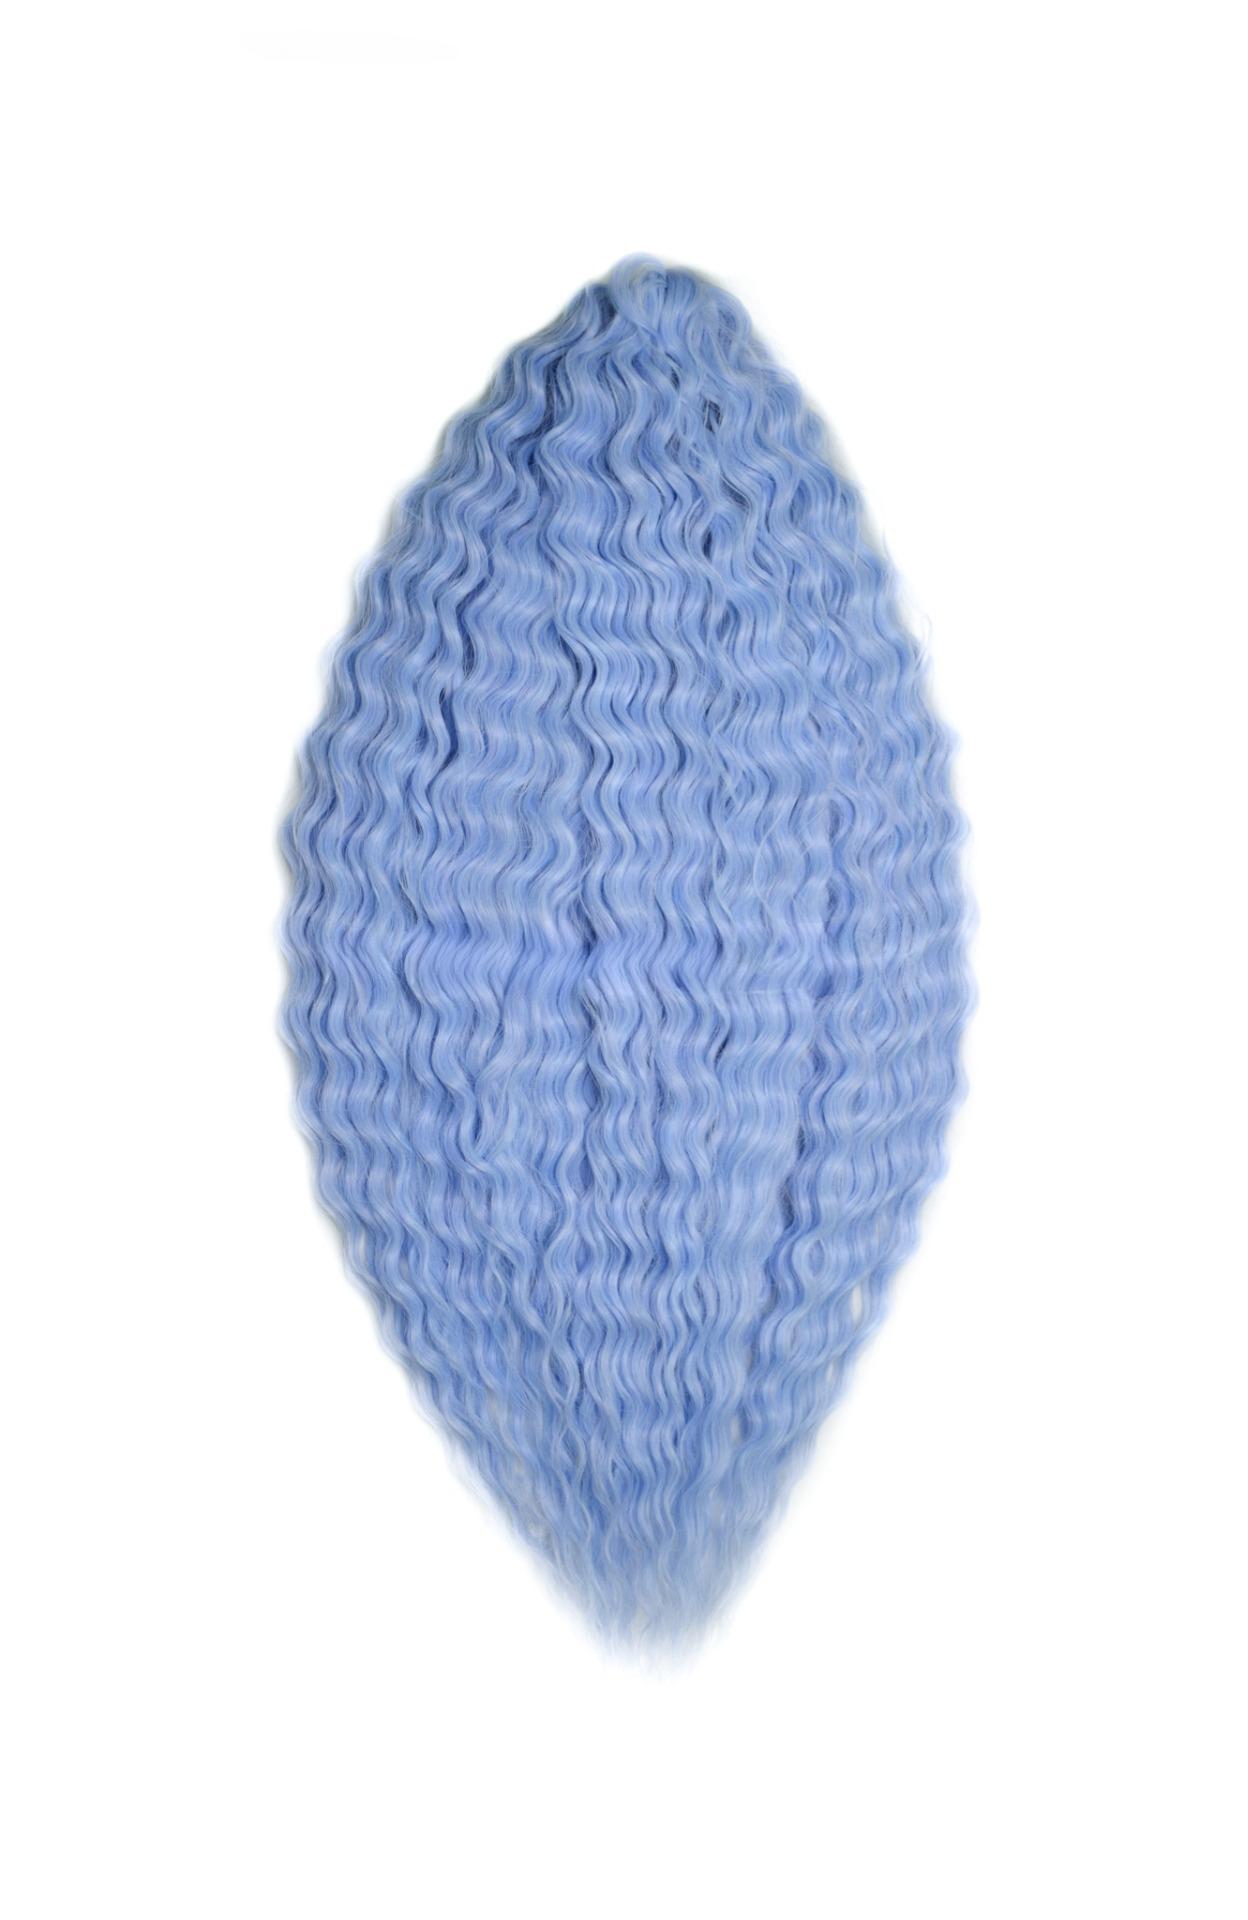 Афрокудри для плетения волос Ariel Ариэль цвет SKY BLUE длина 60см вес 300г афрокудри для плетения волос ariel ариэль blue 7 длина 66см вес 300г